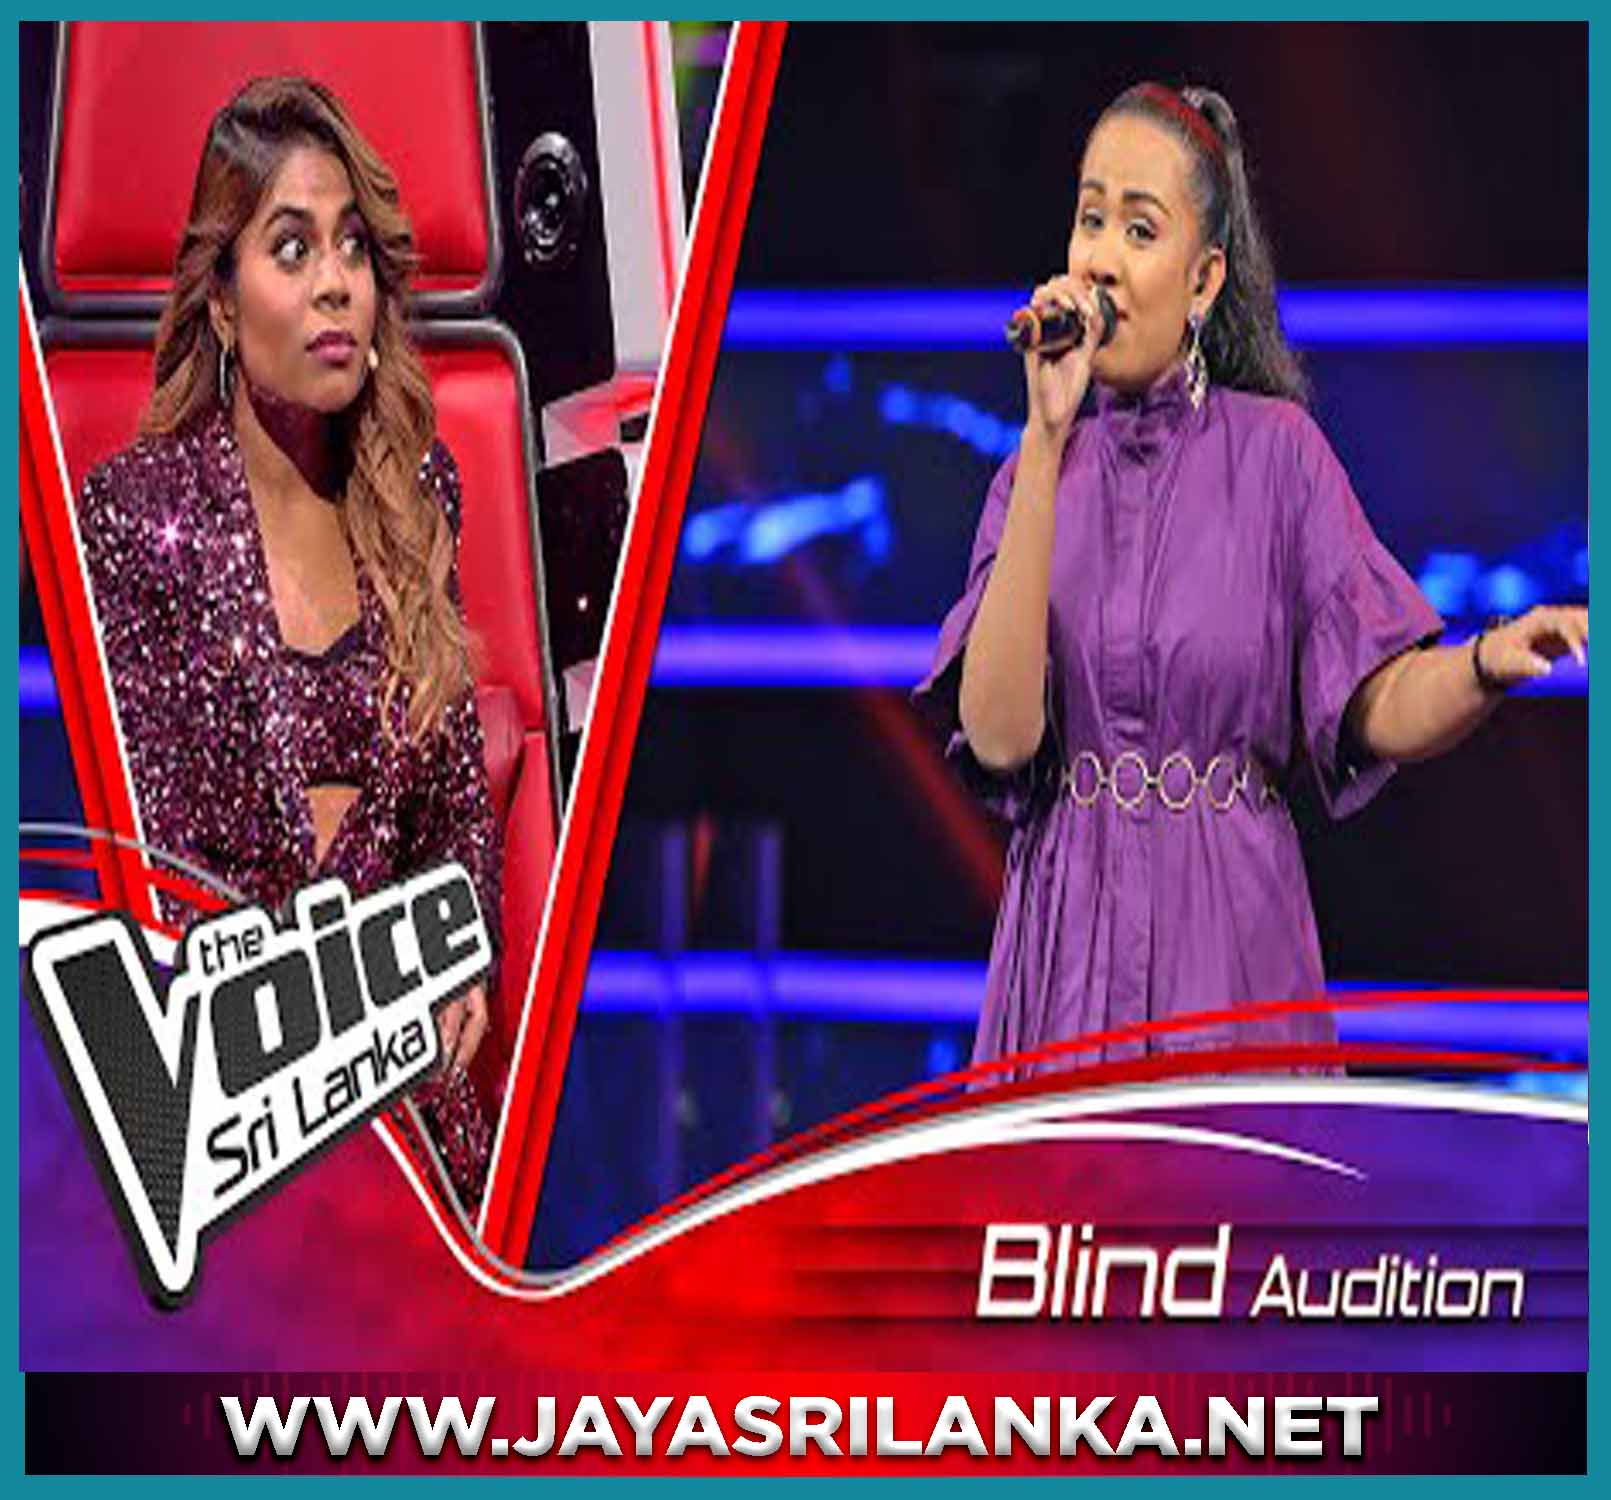 Sundara Magikkari (The Voice Sri Lanka)